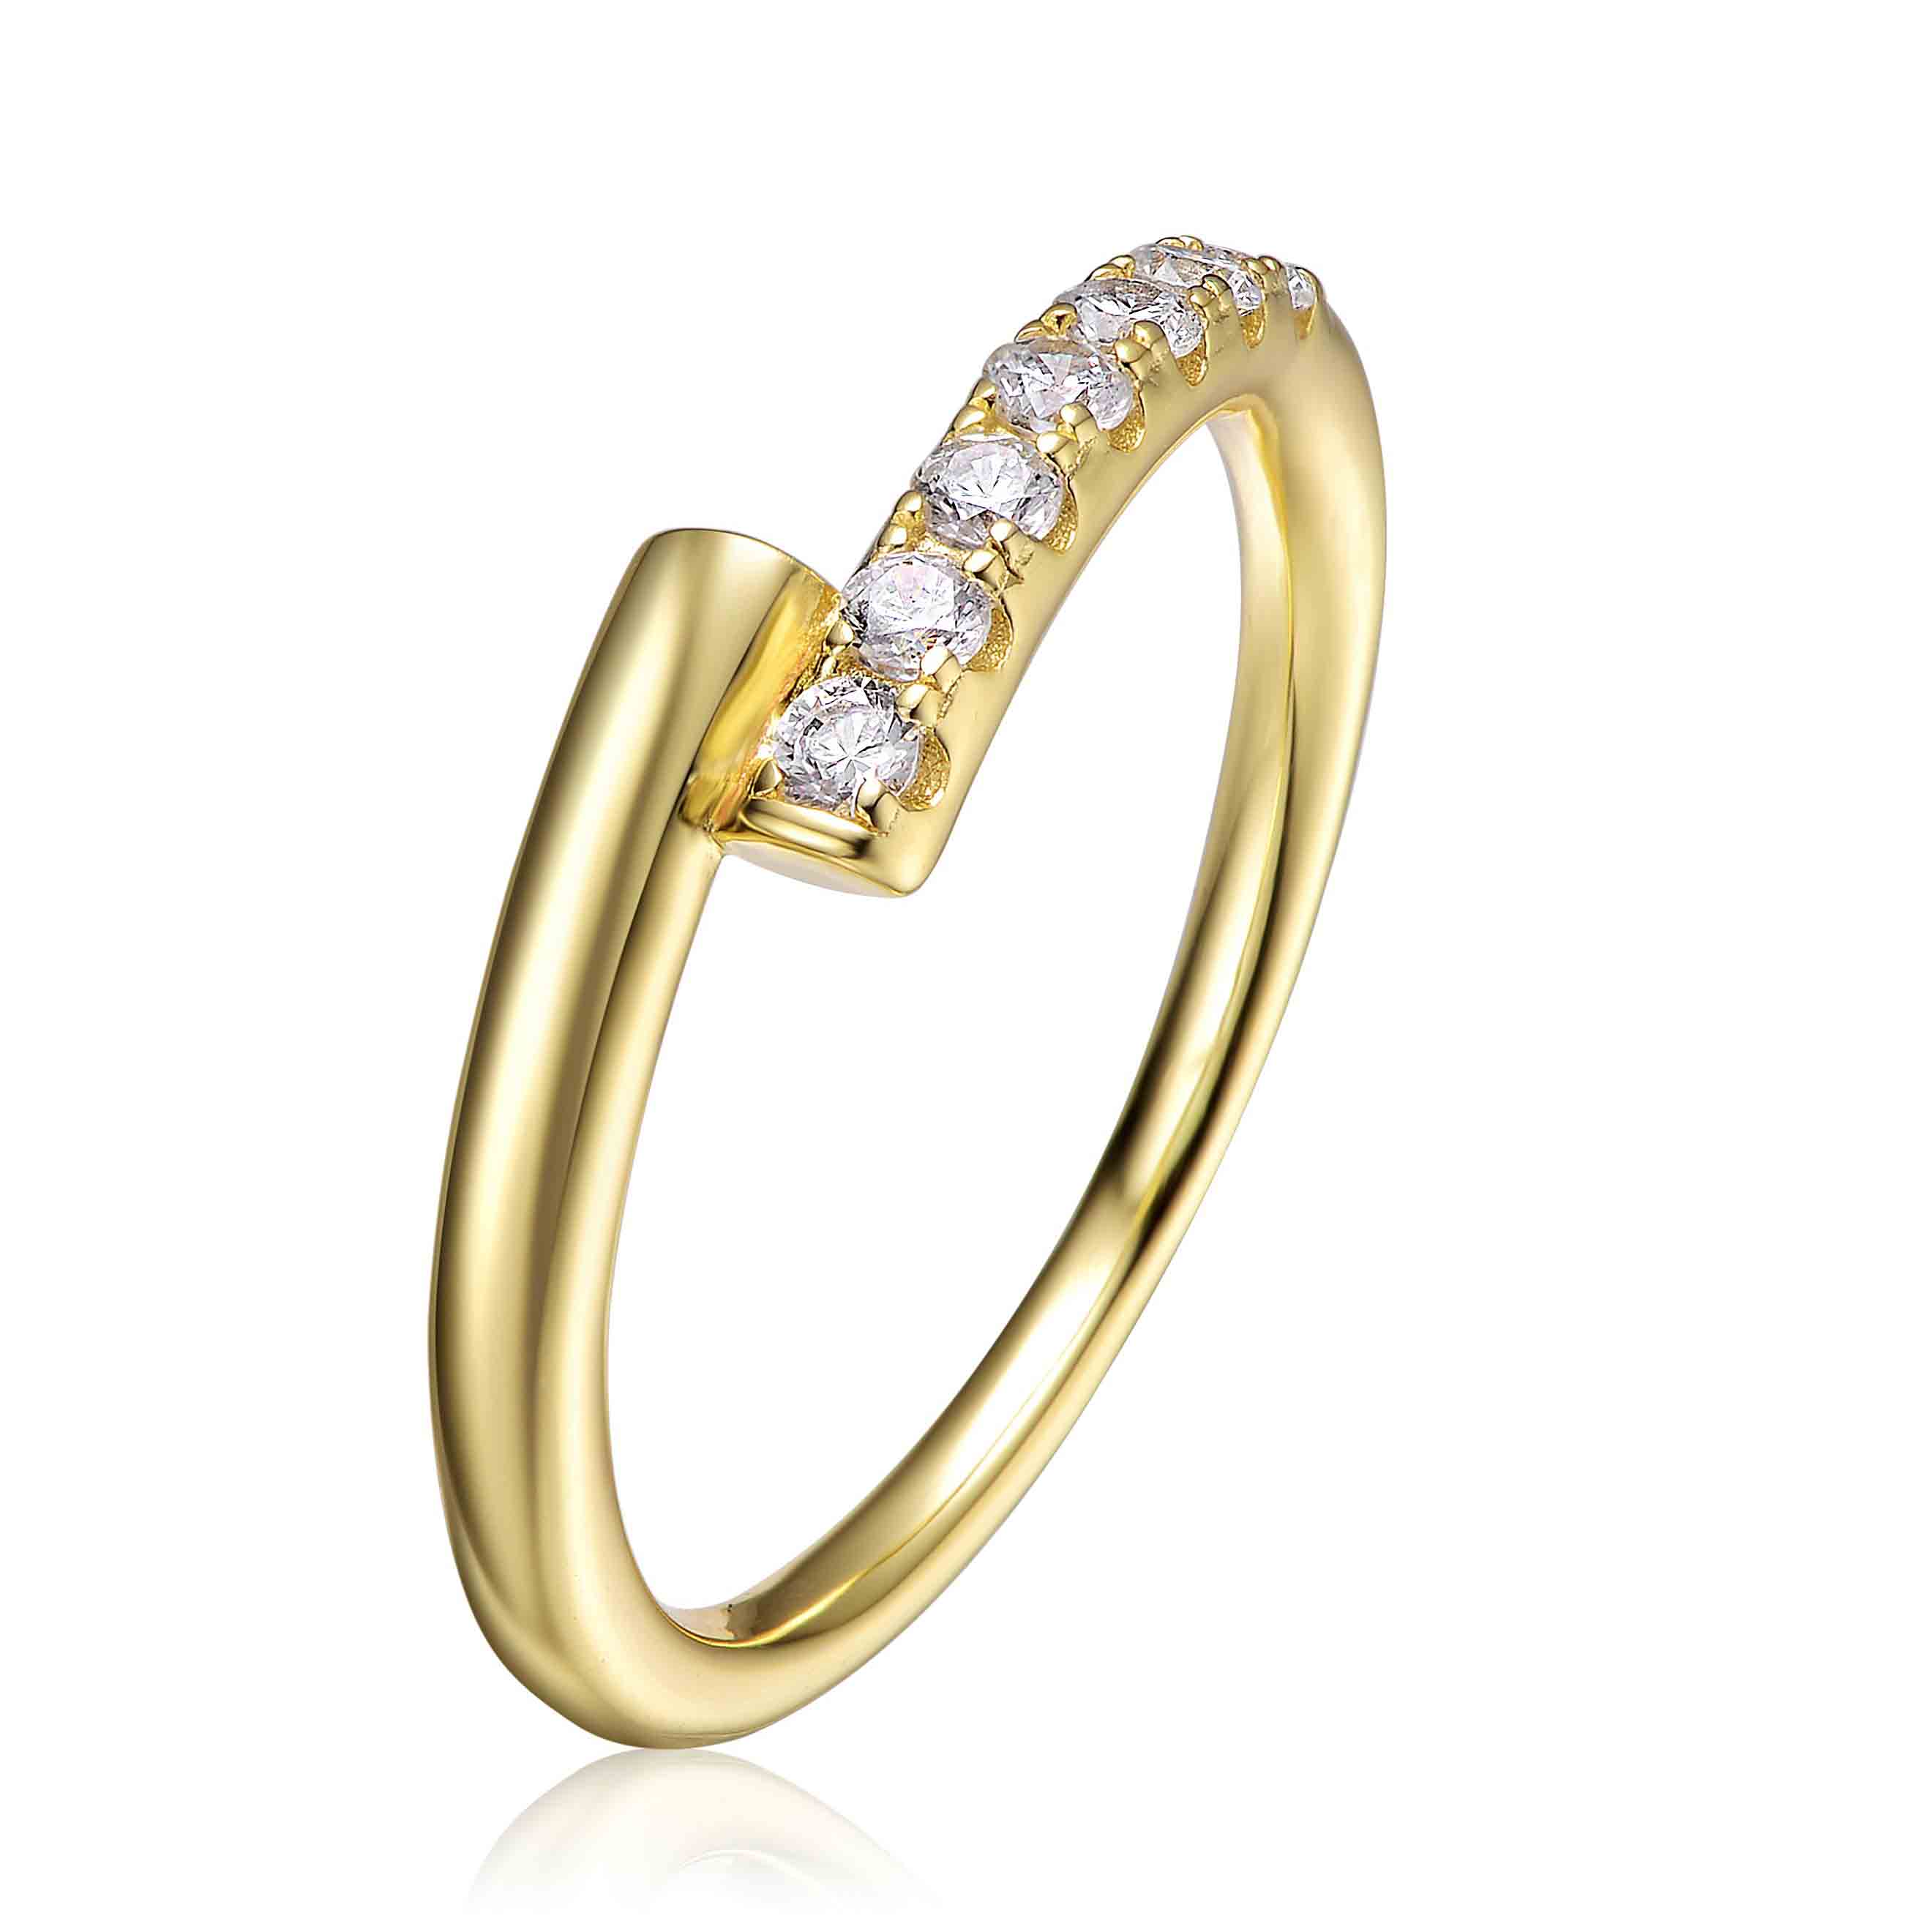 Un fornitore di gioielli Vermeil di alta qualità, anelli personalizzati in argento sterling immersi in oro 14 carati